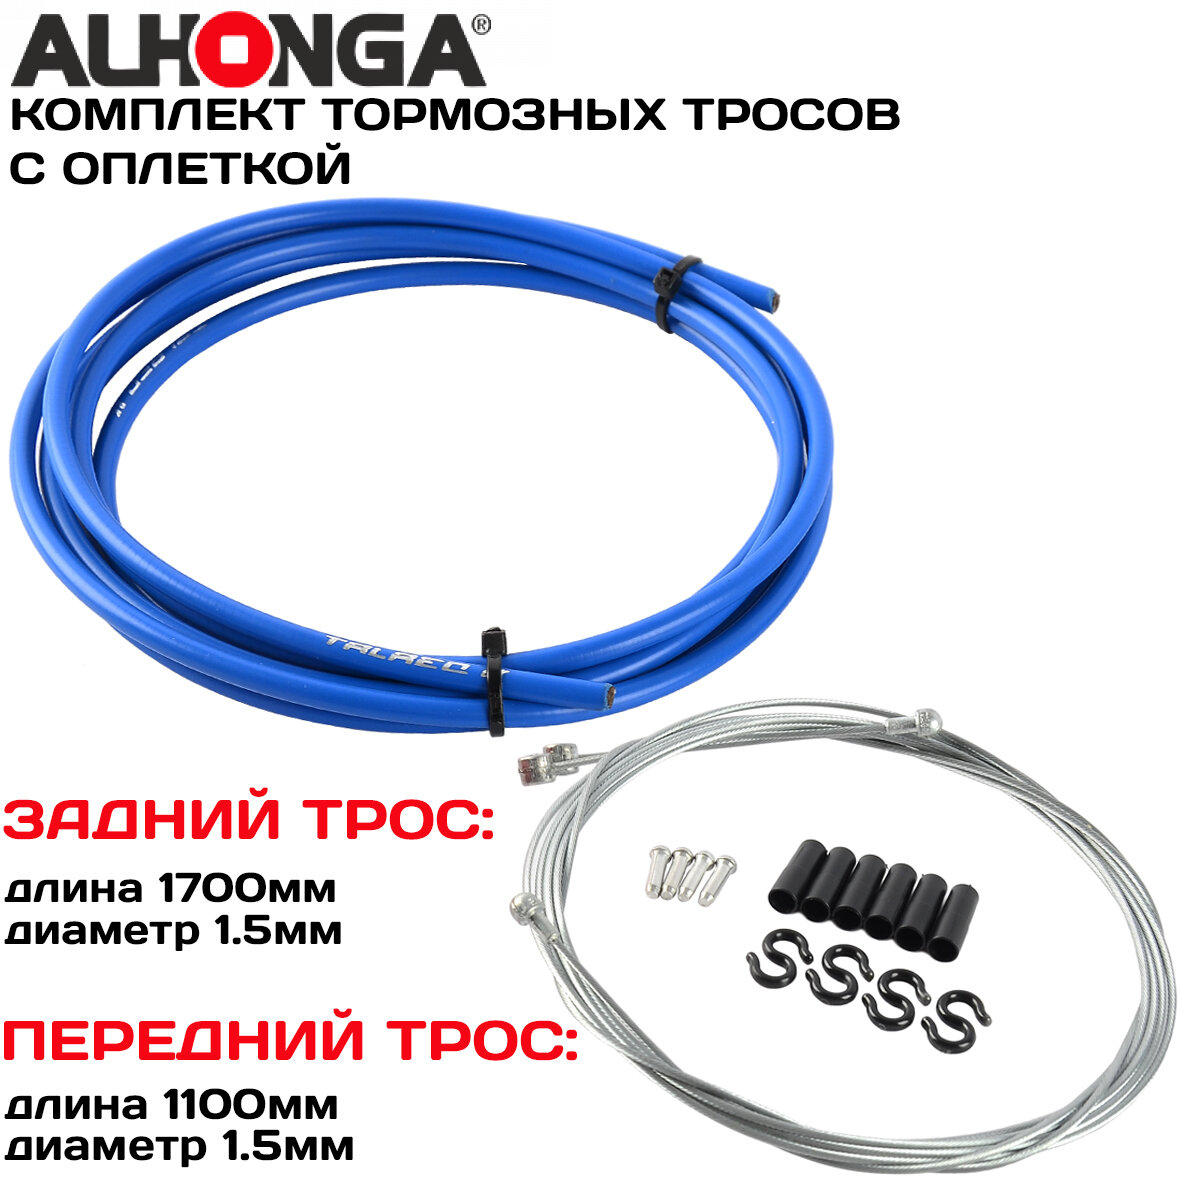 Комплект тормозных тросов (2шт) с универсальной головкой Alhonga МТВ/ROAD, с оплеткой, концевики оплетки и троса, синий